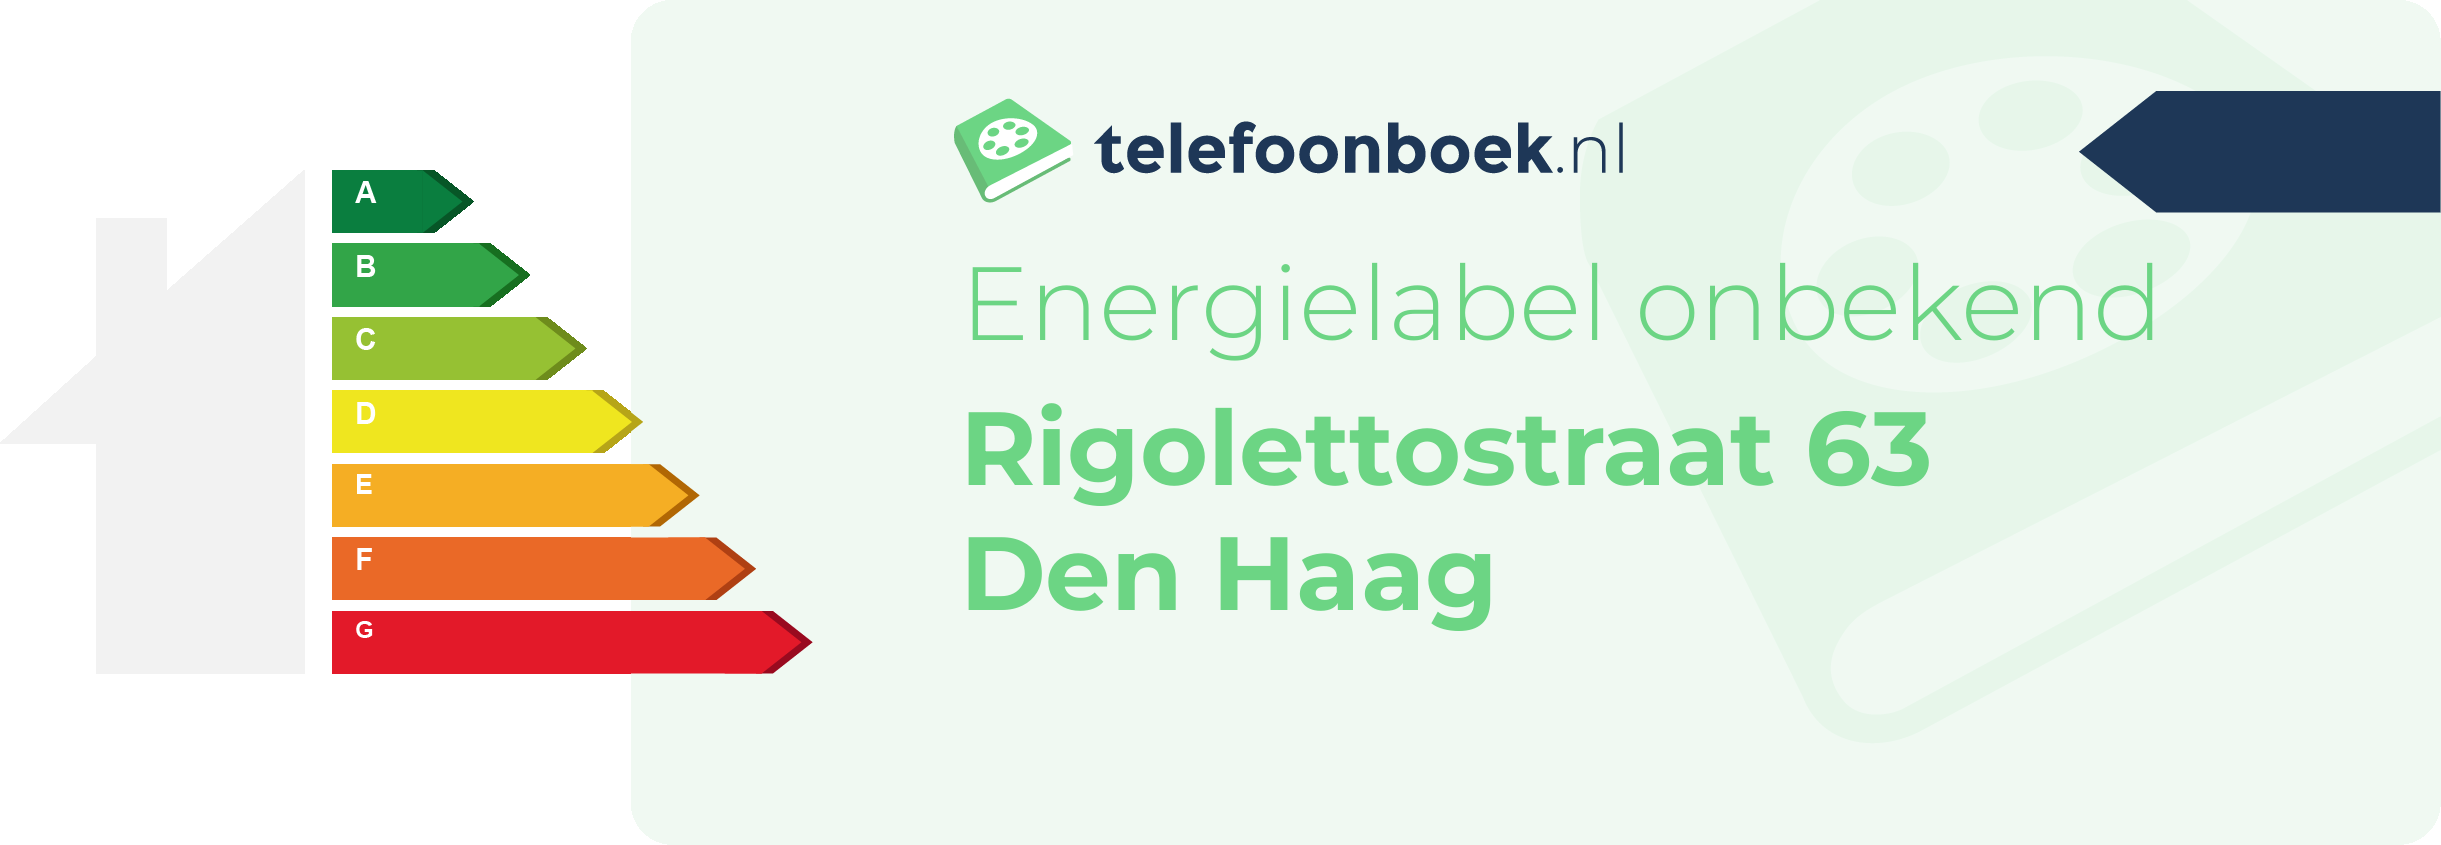 Energielabel Rigolettostraat 63 Den Haag